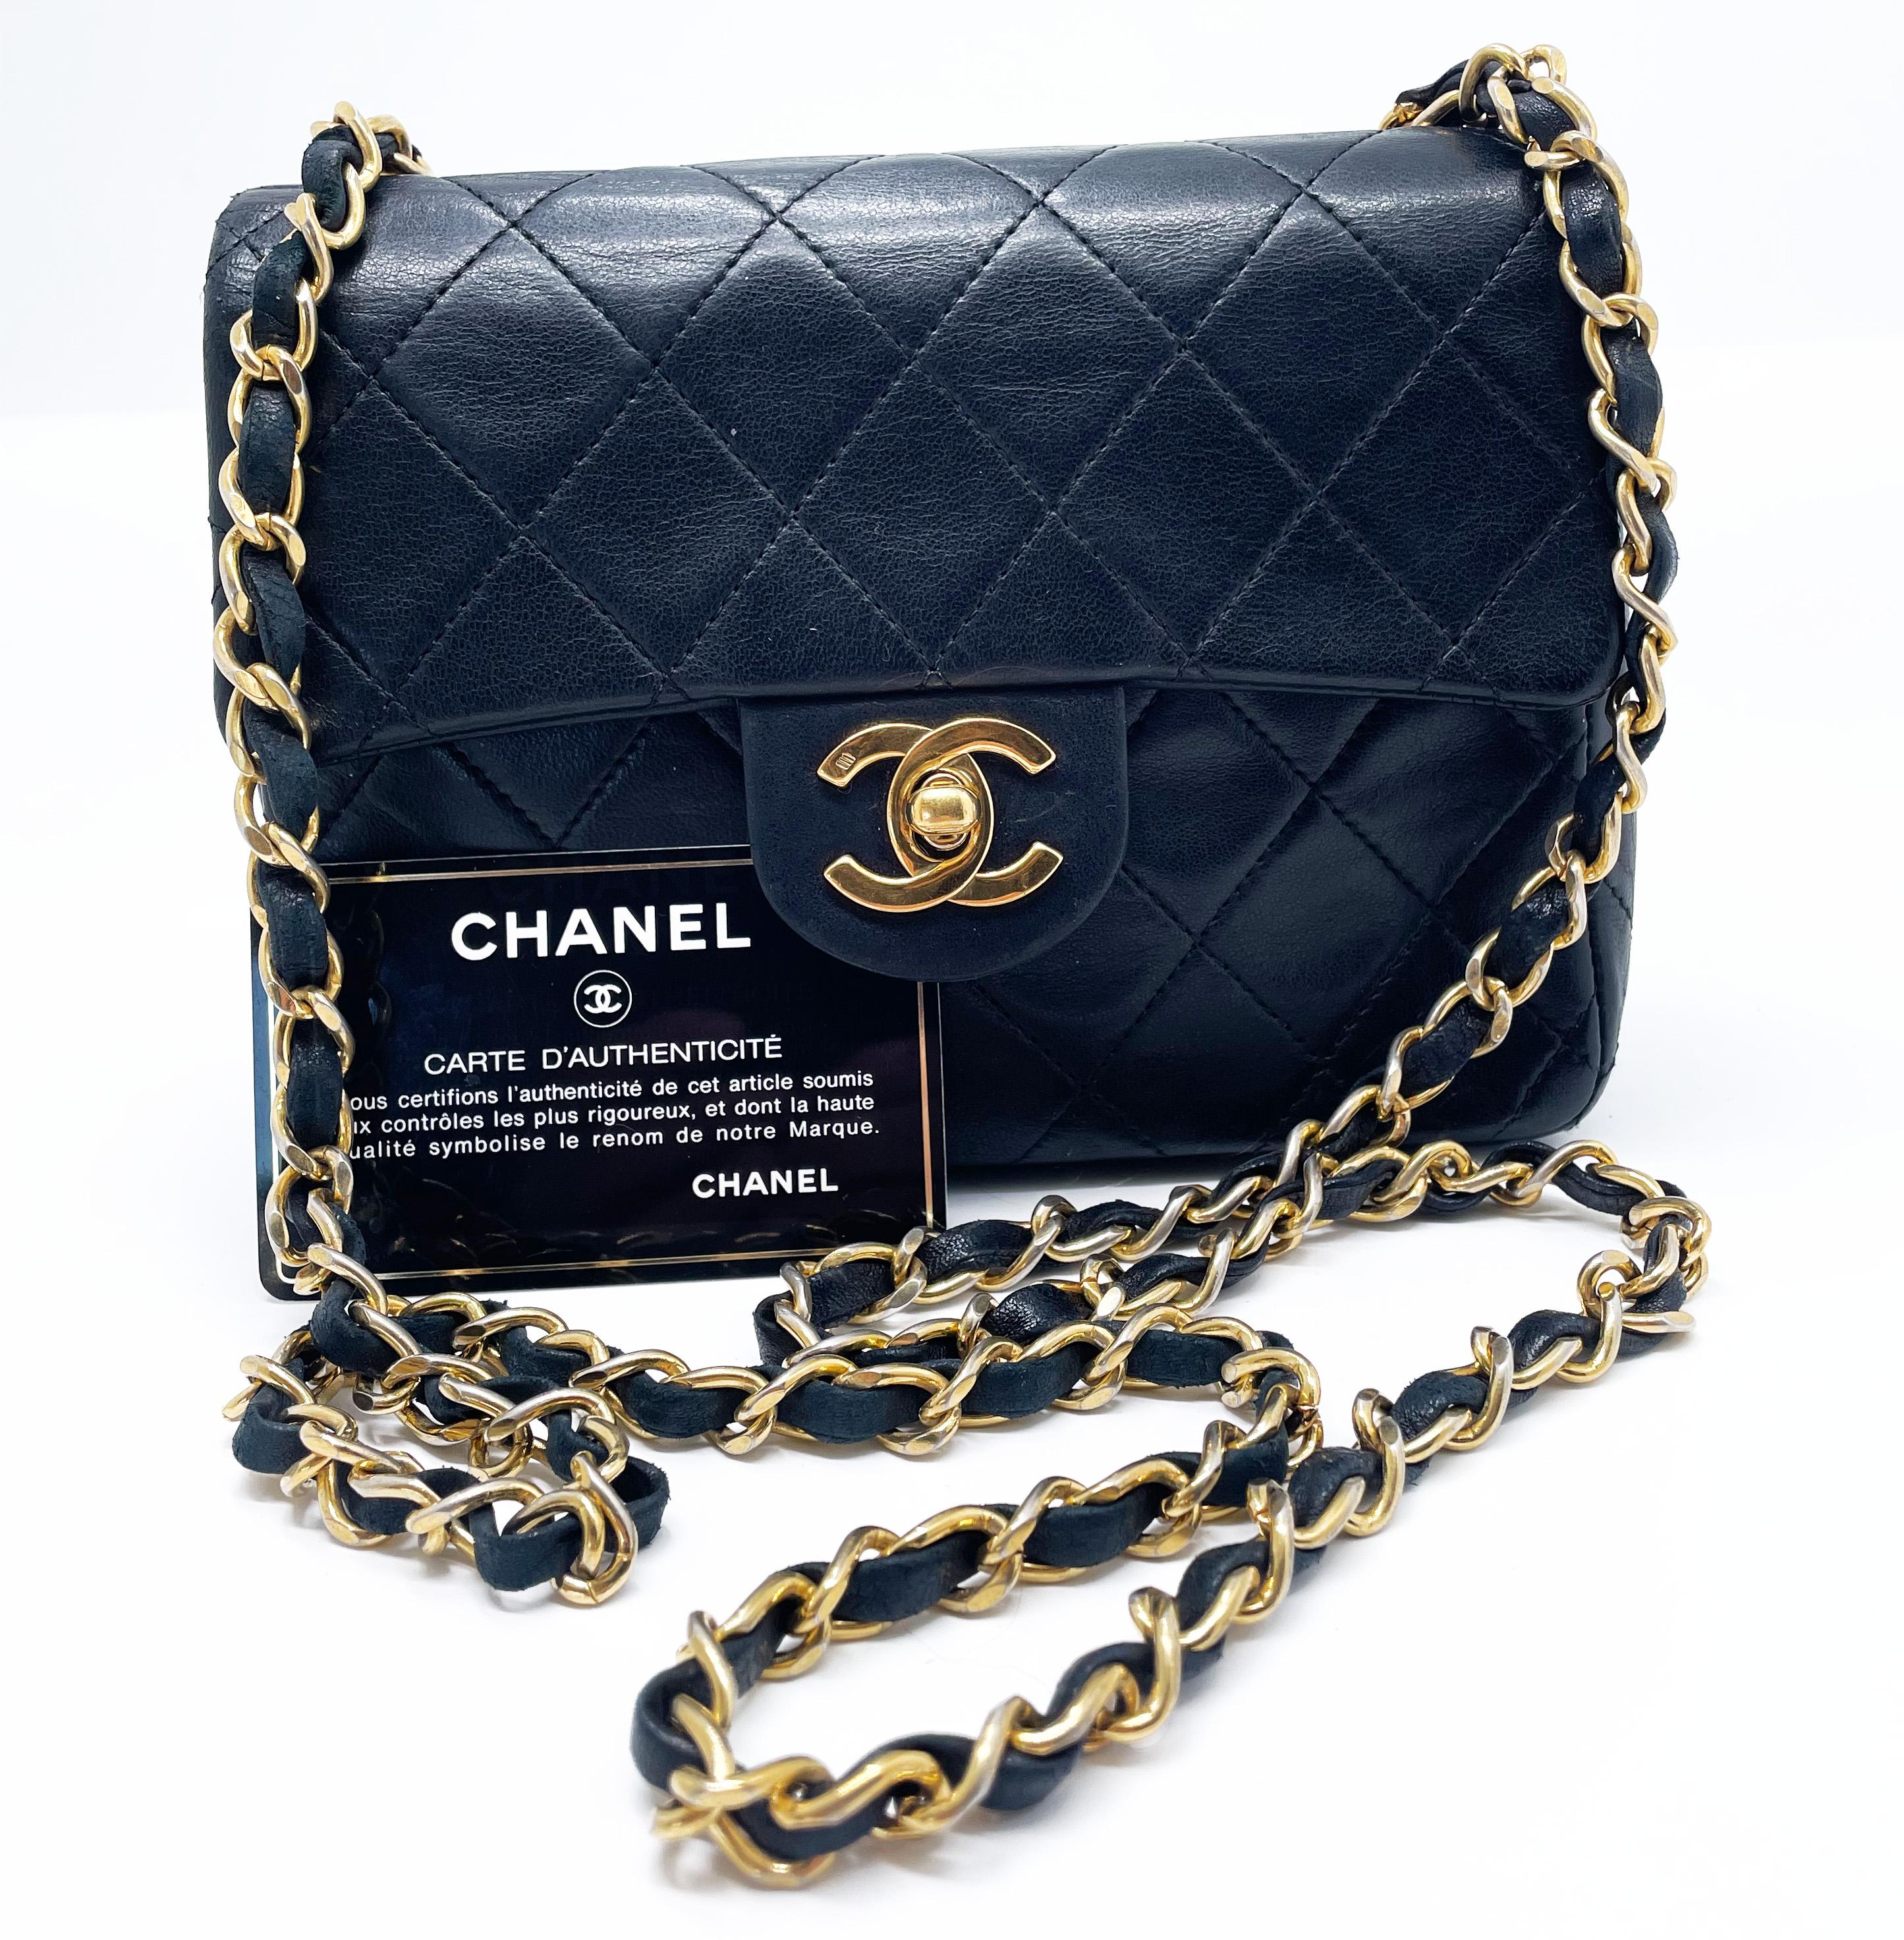 Chanel Mini Timeless Handtasche aus schwarzem, gestepptem Leder, goldene Metallbeschläge, goldener Metallkettenriemen, der mit schwarzem Leder verflochten ist, so dass sie sowohl über der Schulter als auch am Körper getragen werden kann.